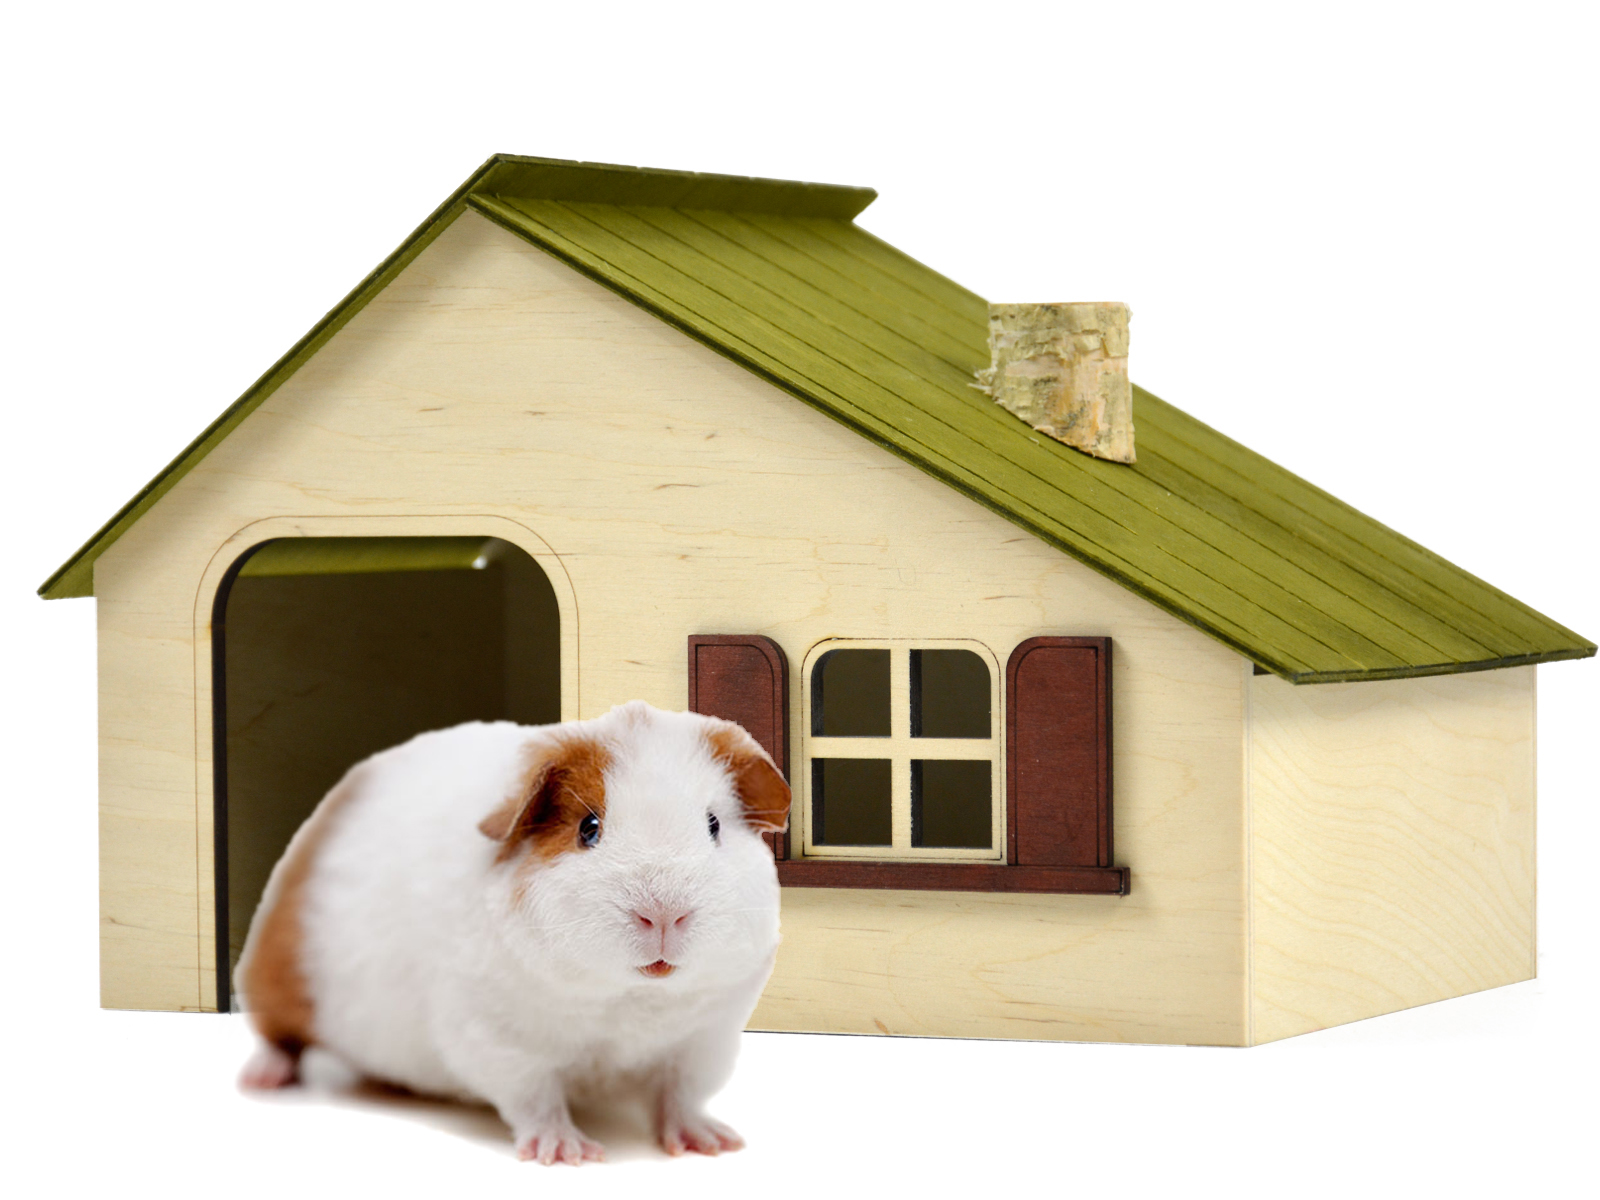 Дом кролика 1. Домик кролика. Деревянный домик для кролика. Домик для кролика декоративного. Картонный домик для кролика.